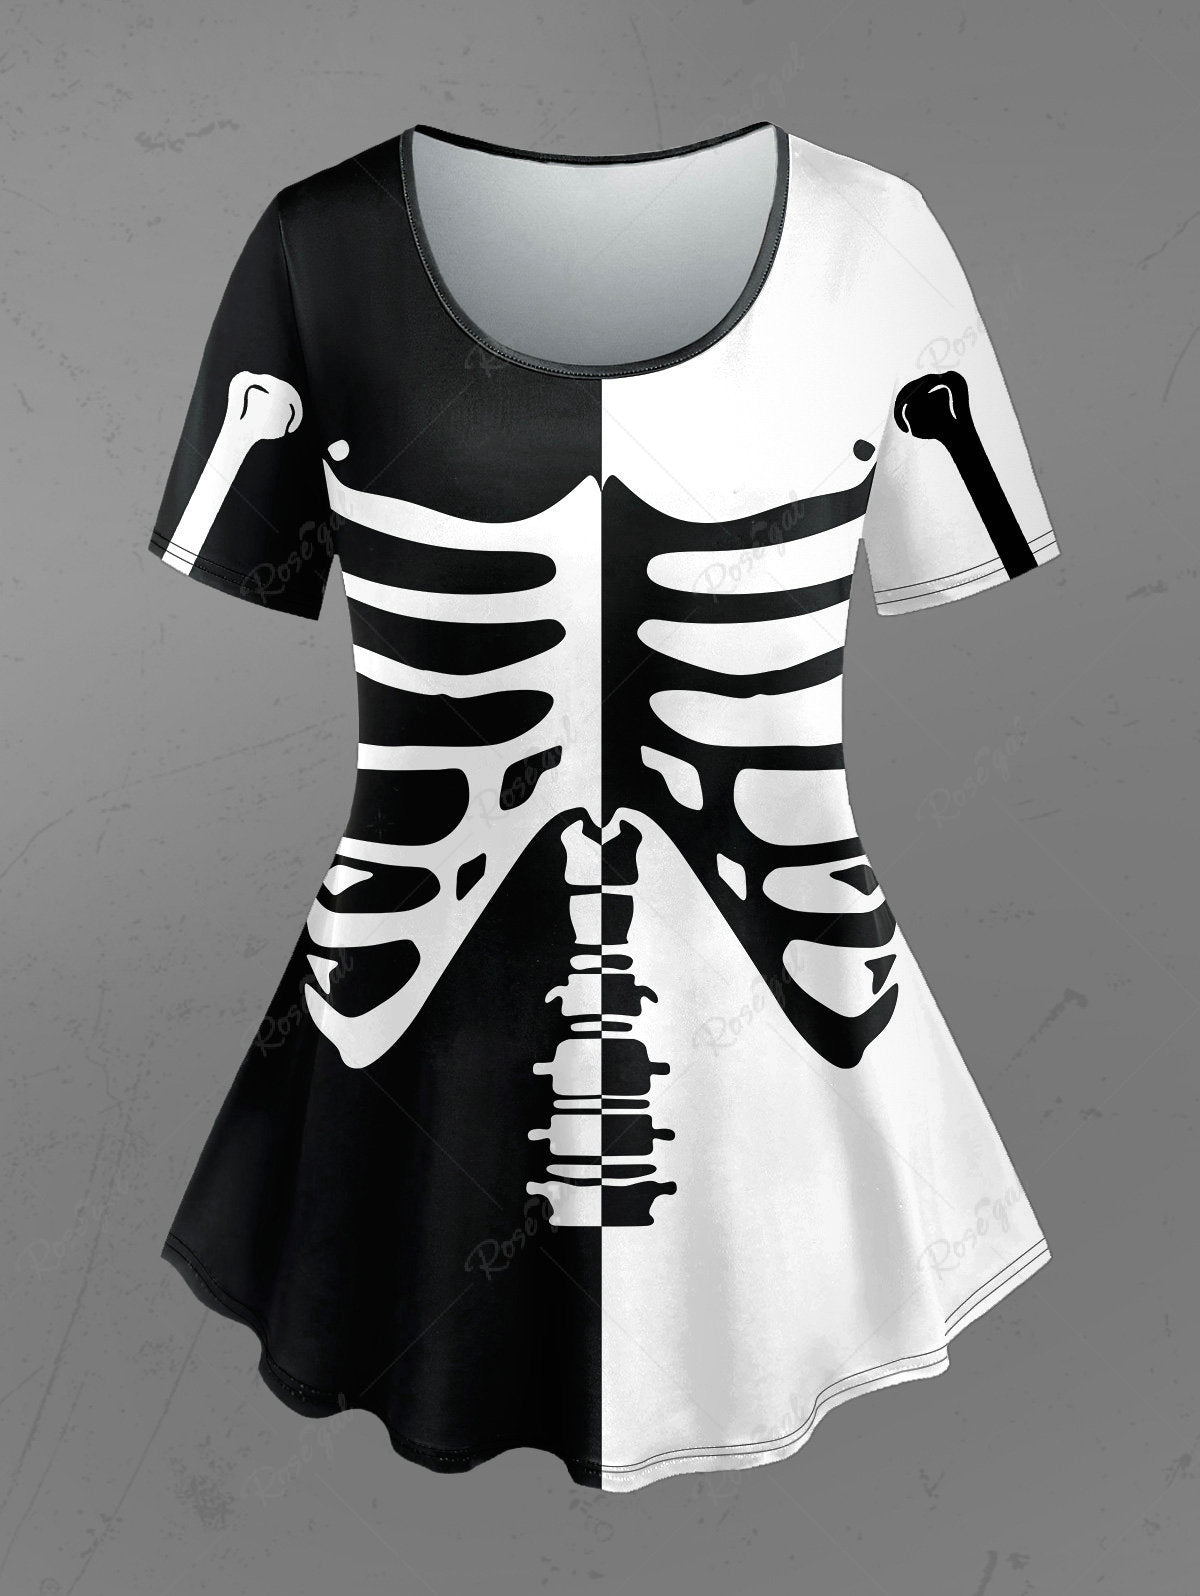 💗CHIARA Loves💗 Gothic Skeleton Print Two Tone Halloween T-shirt